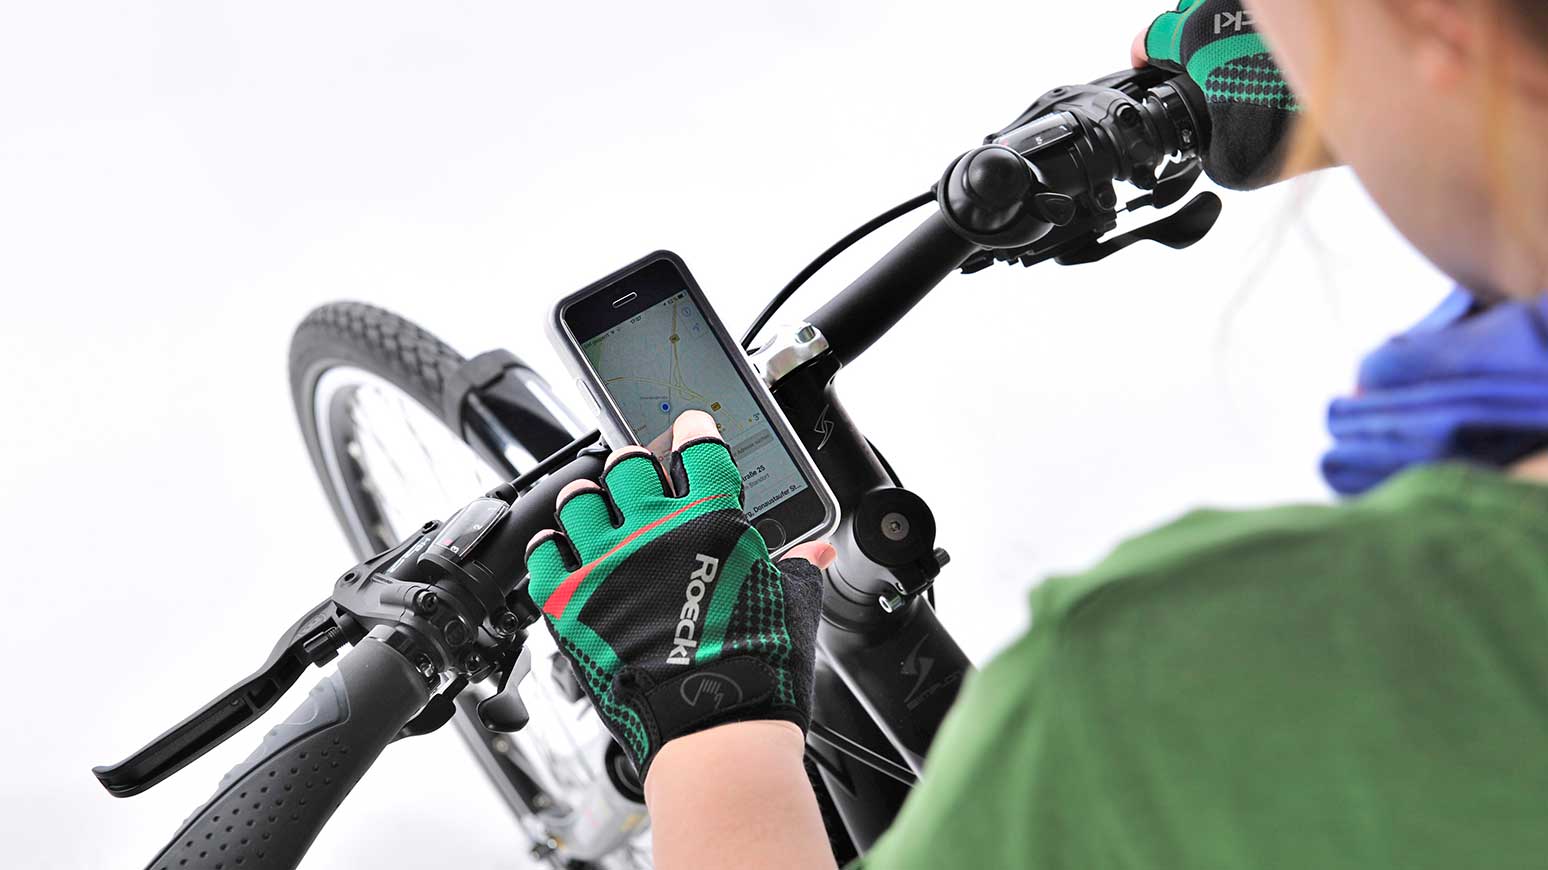 Fahrradhalterung Handy Test, sichere den Smartphone vernünftig!